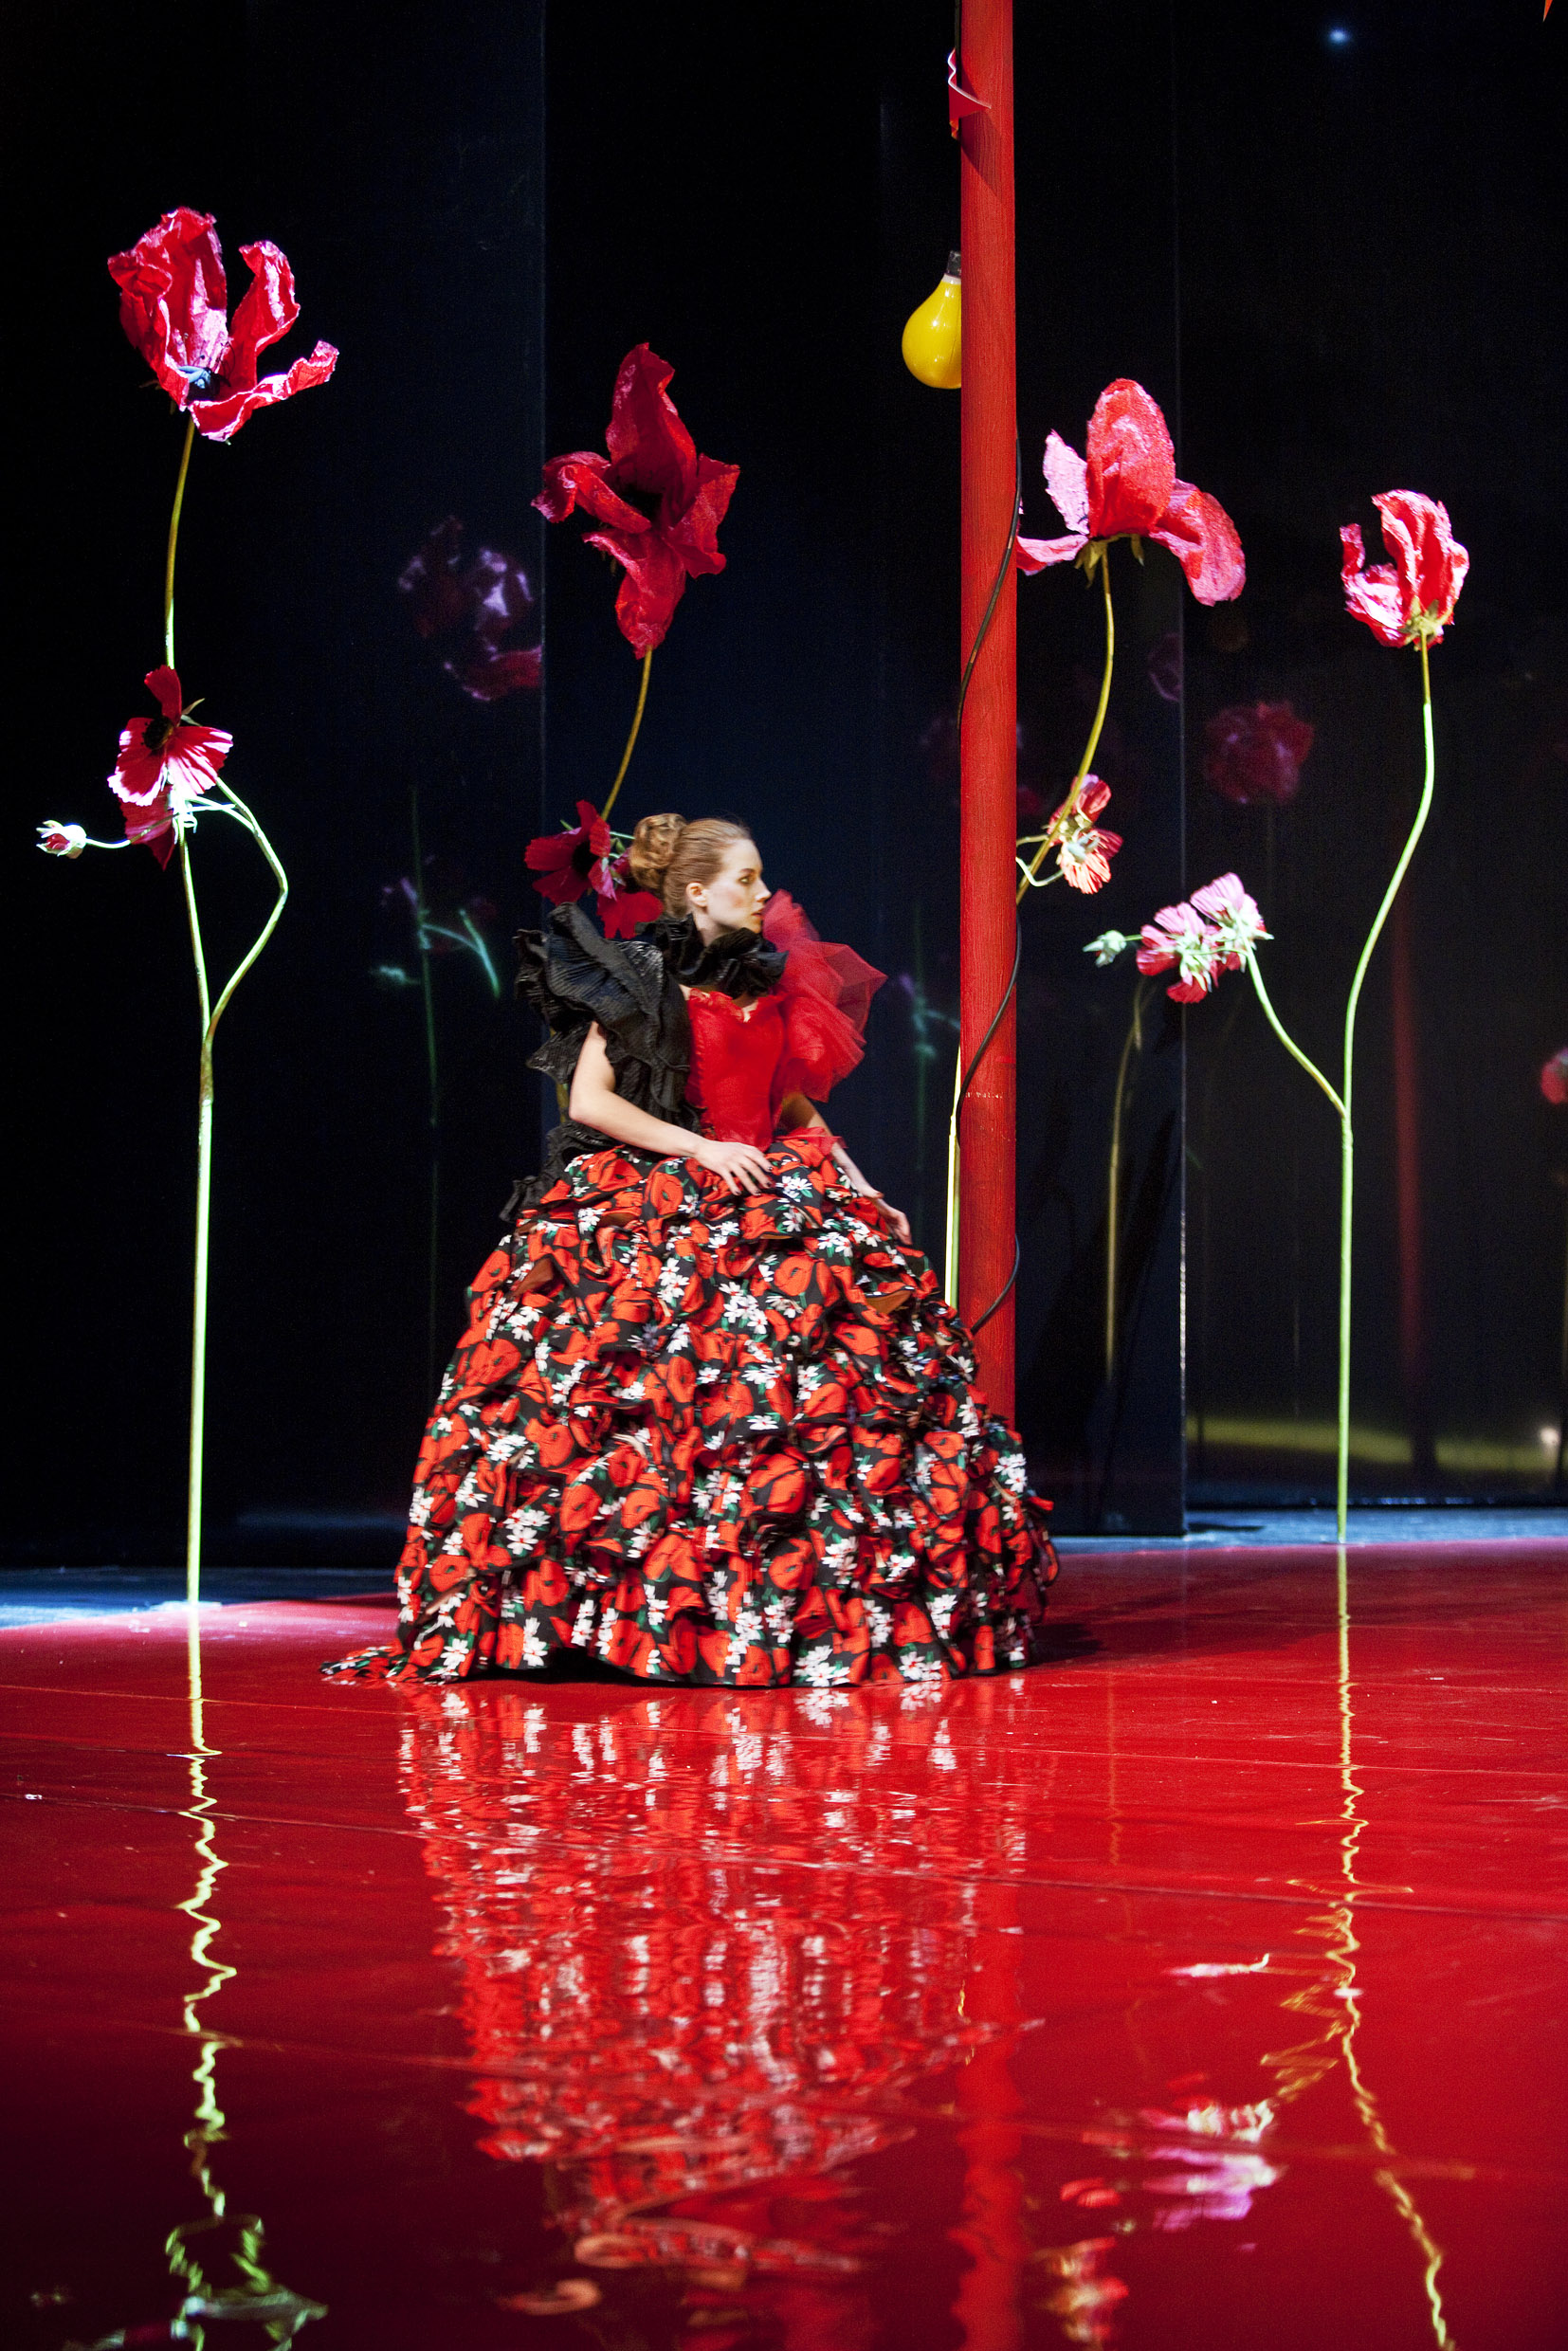 Nadja Mirmiran i Trettondagsafton. Premiär 3 december 2010 på Stora scenen.